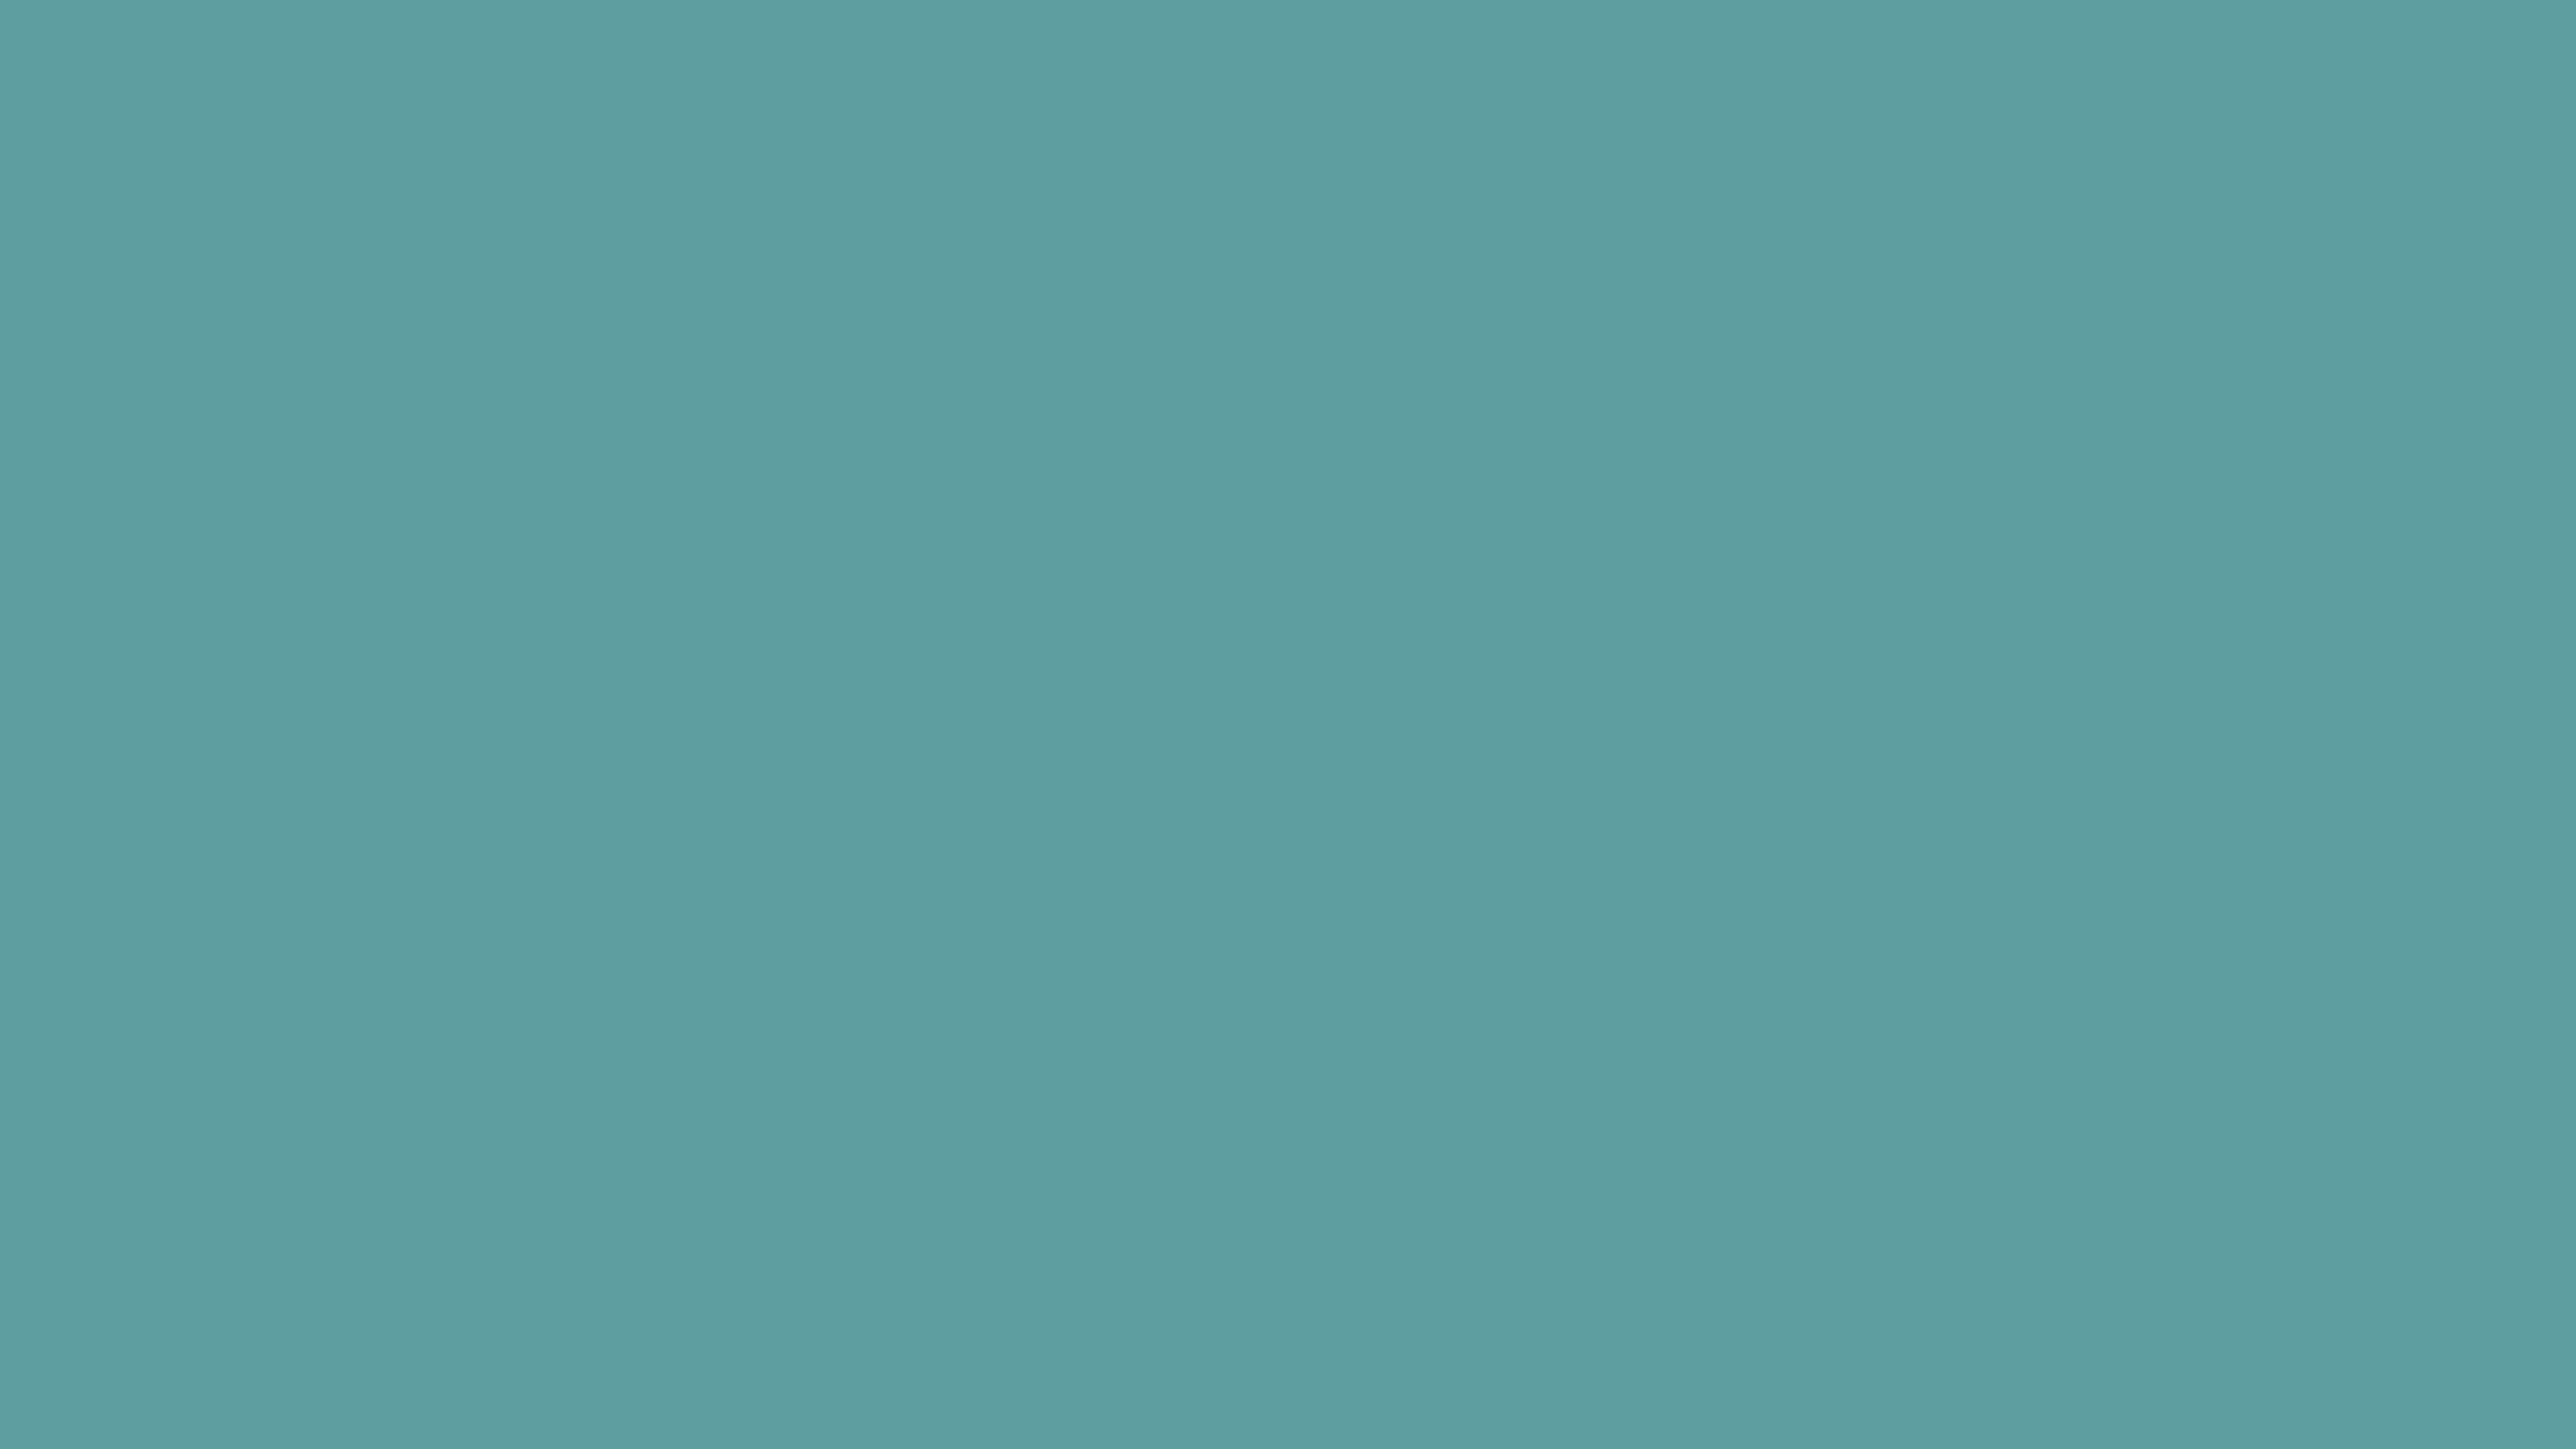 7680x4320 Cadet Blue Solid Color Background